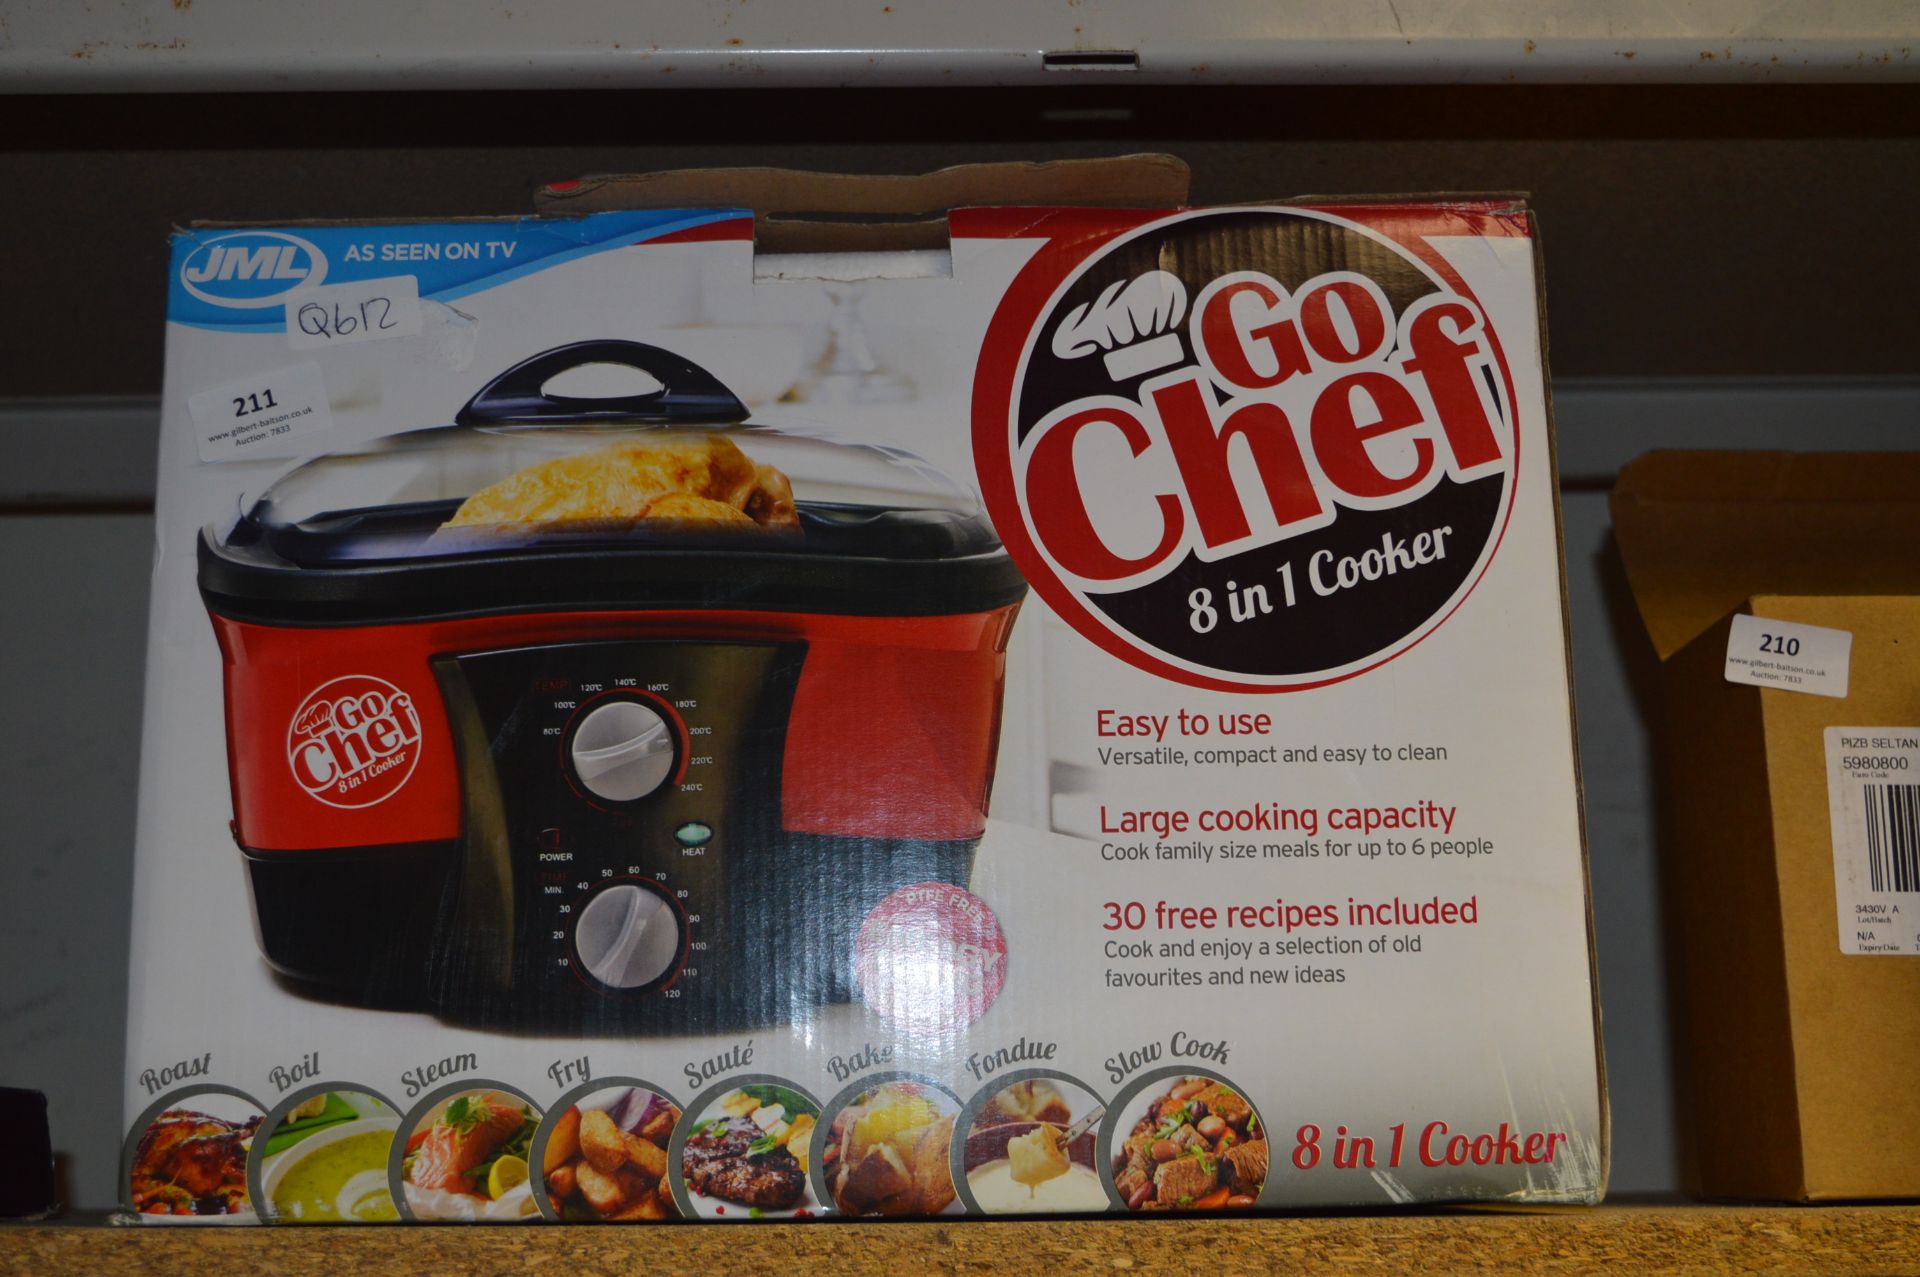 JML Go Chef 8-in-1 Cooker